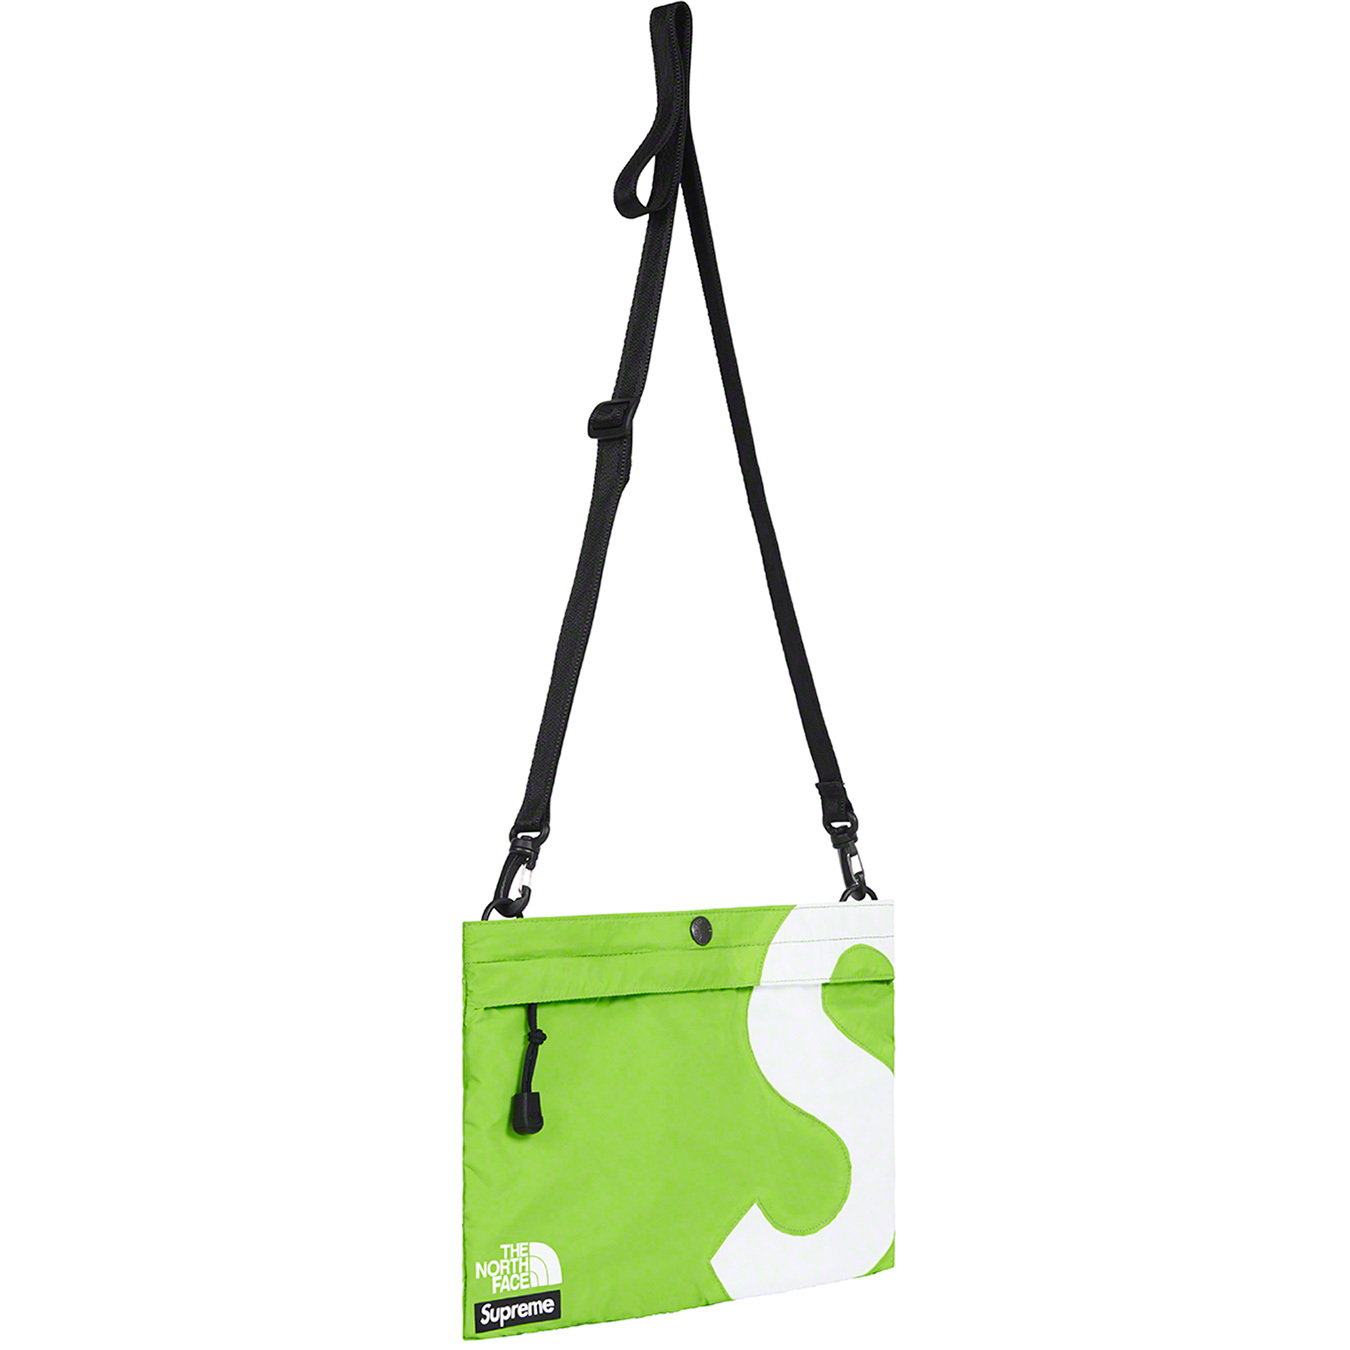 Supreme®/The North Face® S Logo Shoulder Bag